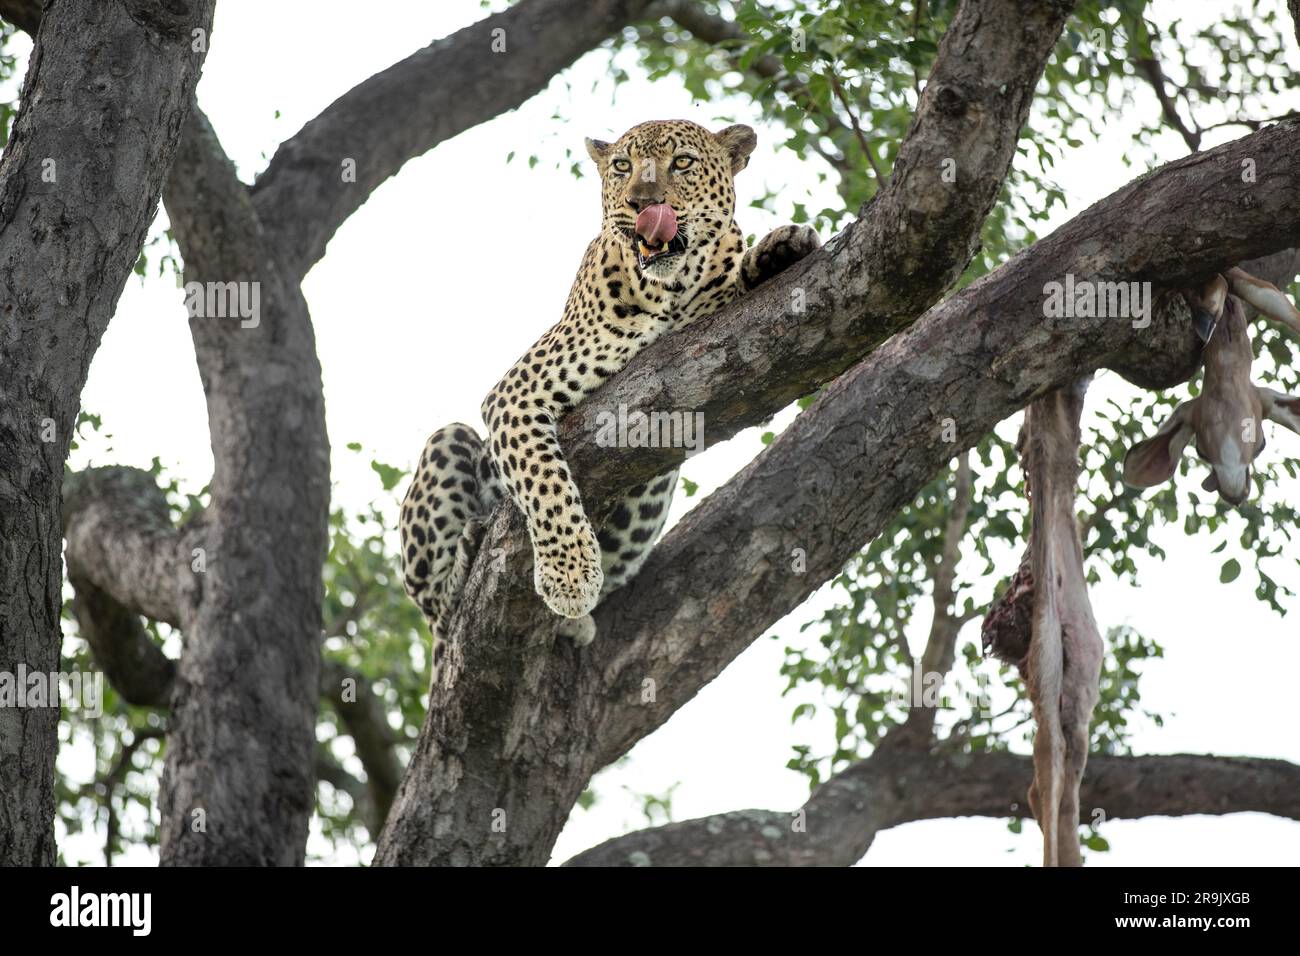 Un léopard, Panthera pardus, se trouve dans une branche, avec une carcasse en palans. Banque D'Images